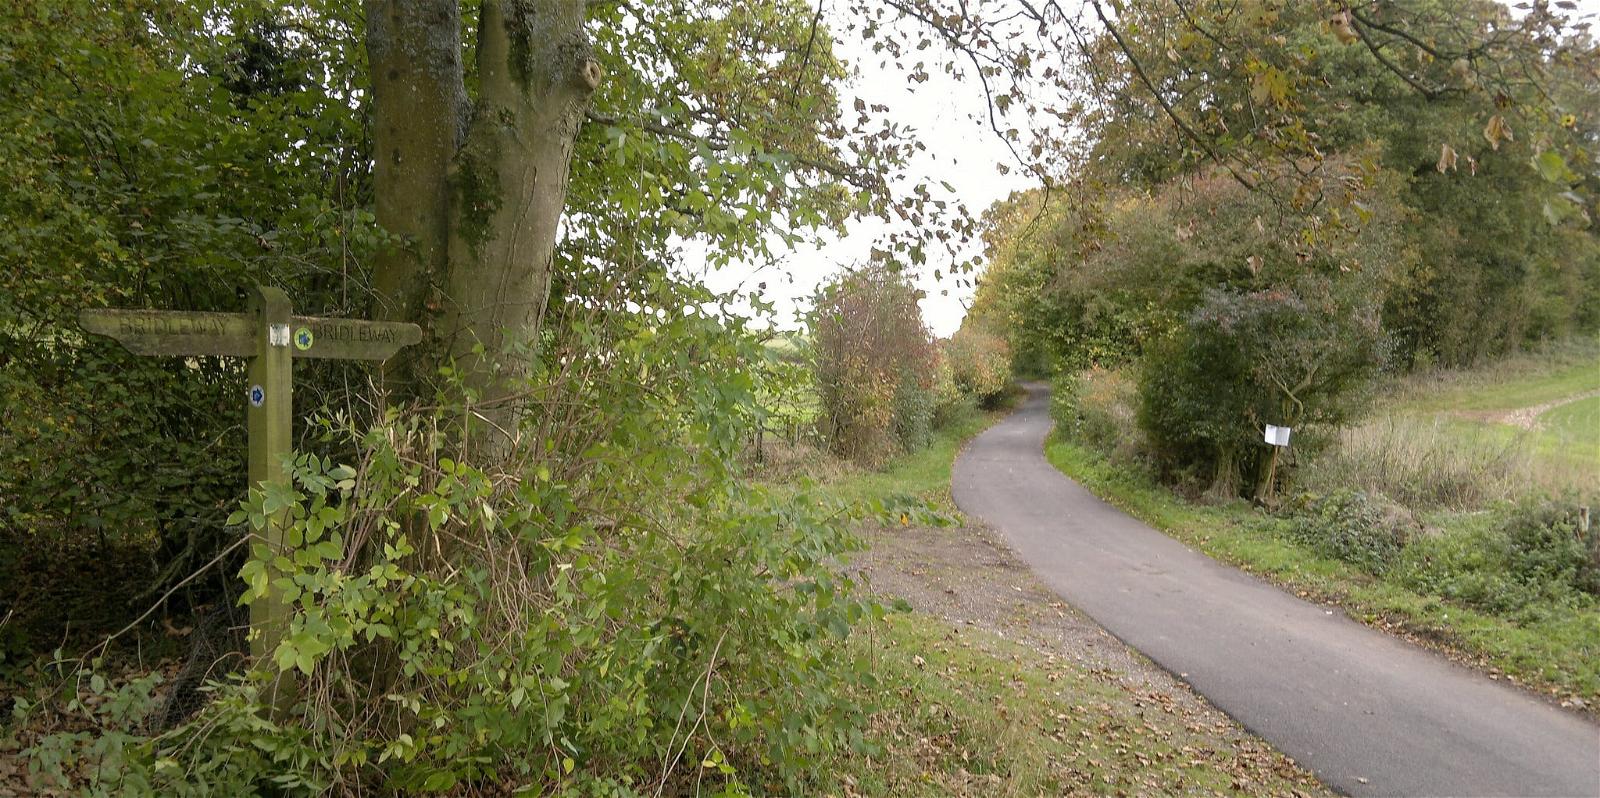 ภาพของ Portway. uk england sign hampshire bridleway hants publicbridleway cyclingdiscoveries mapmyride:route=1043529039